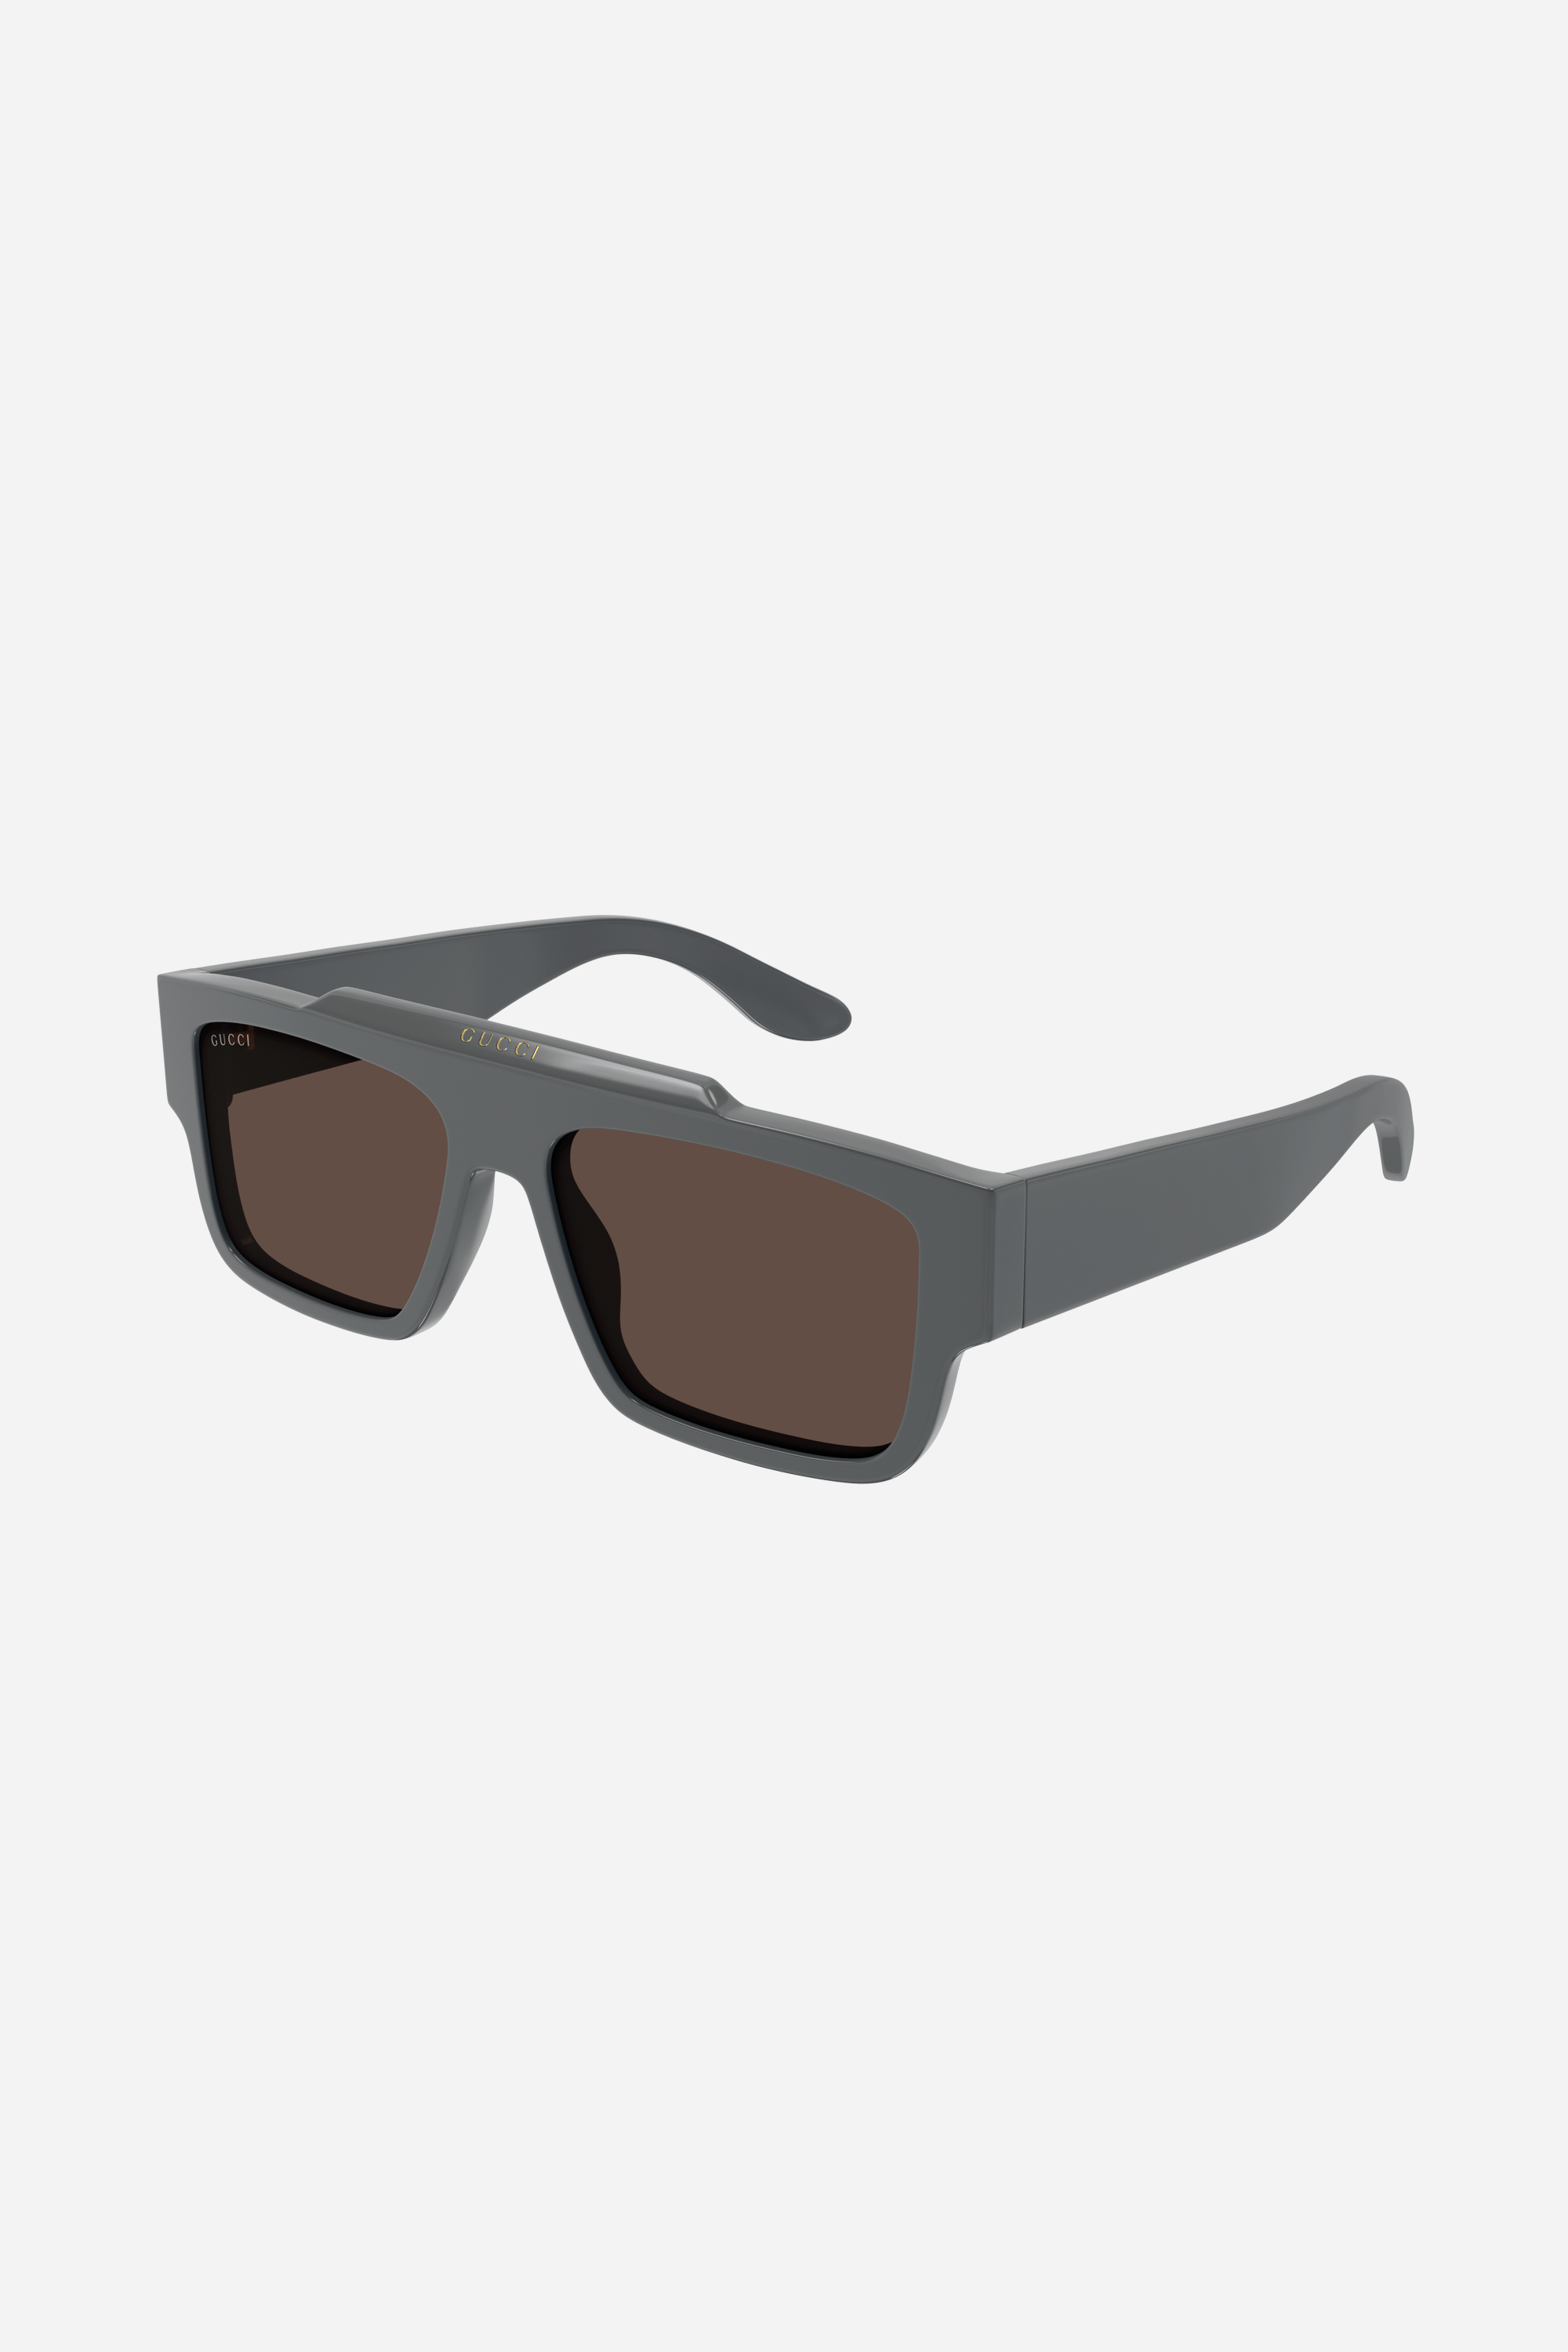 Gucci flat top grey sunglasses - Eyewear Club